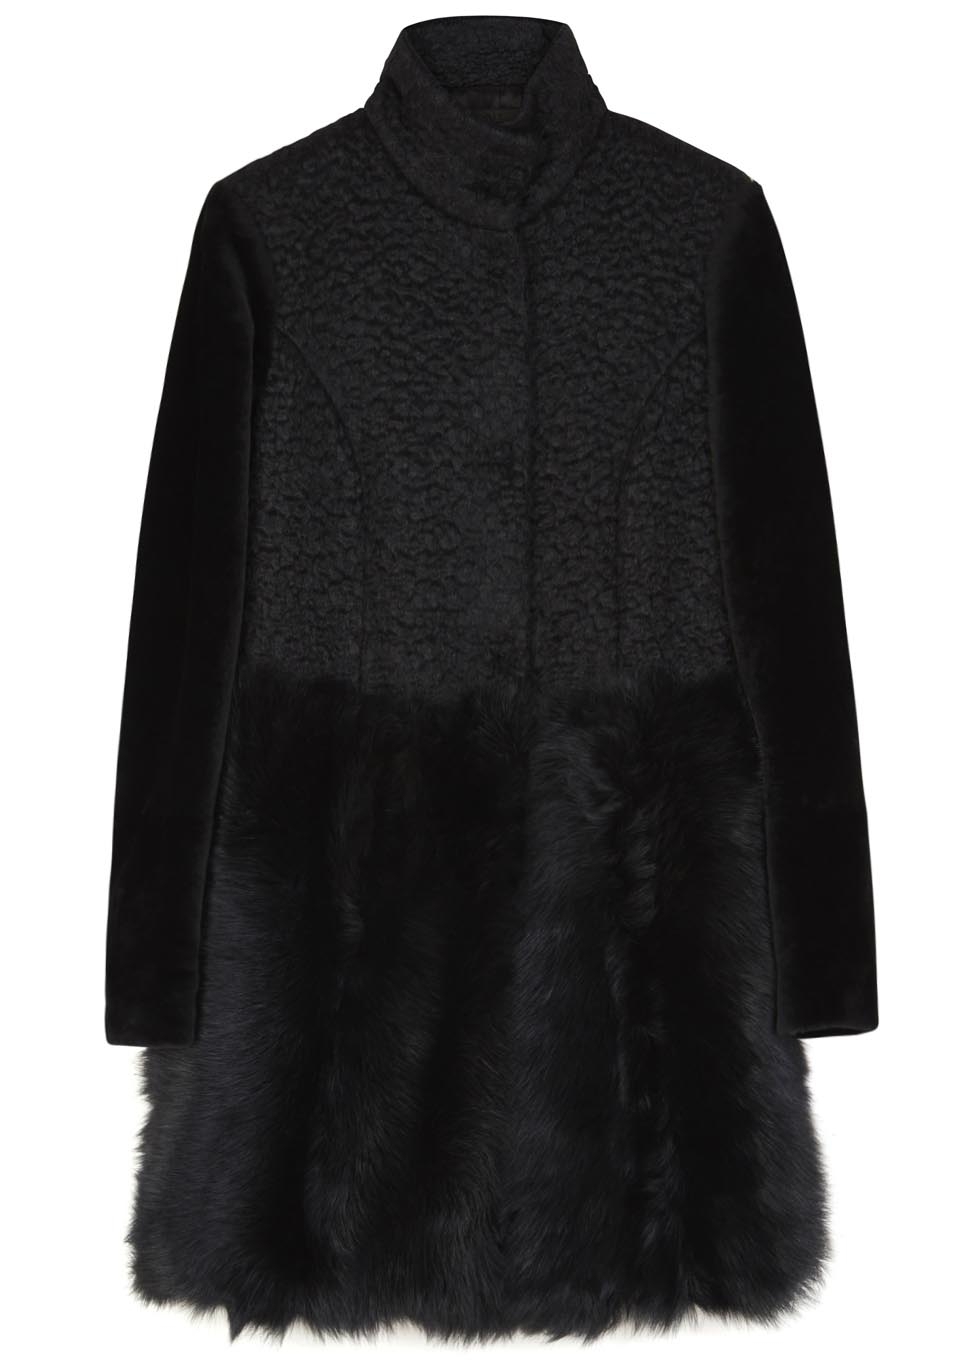 Black shearling and fur coat